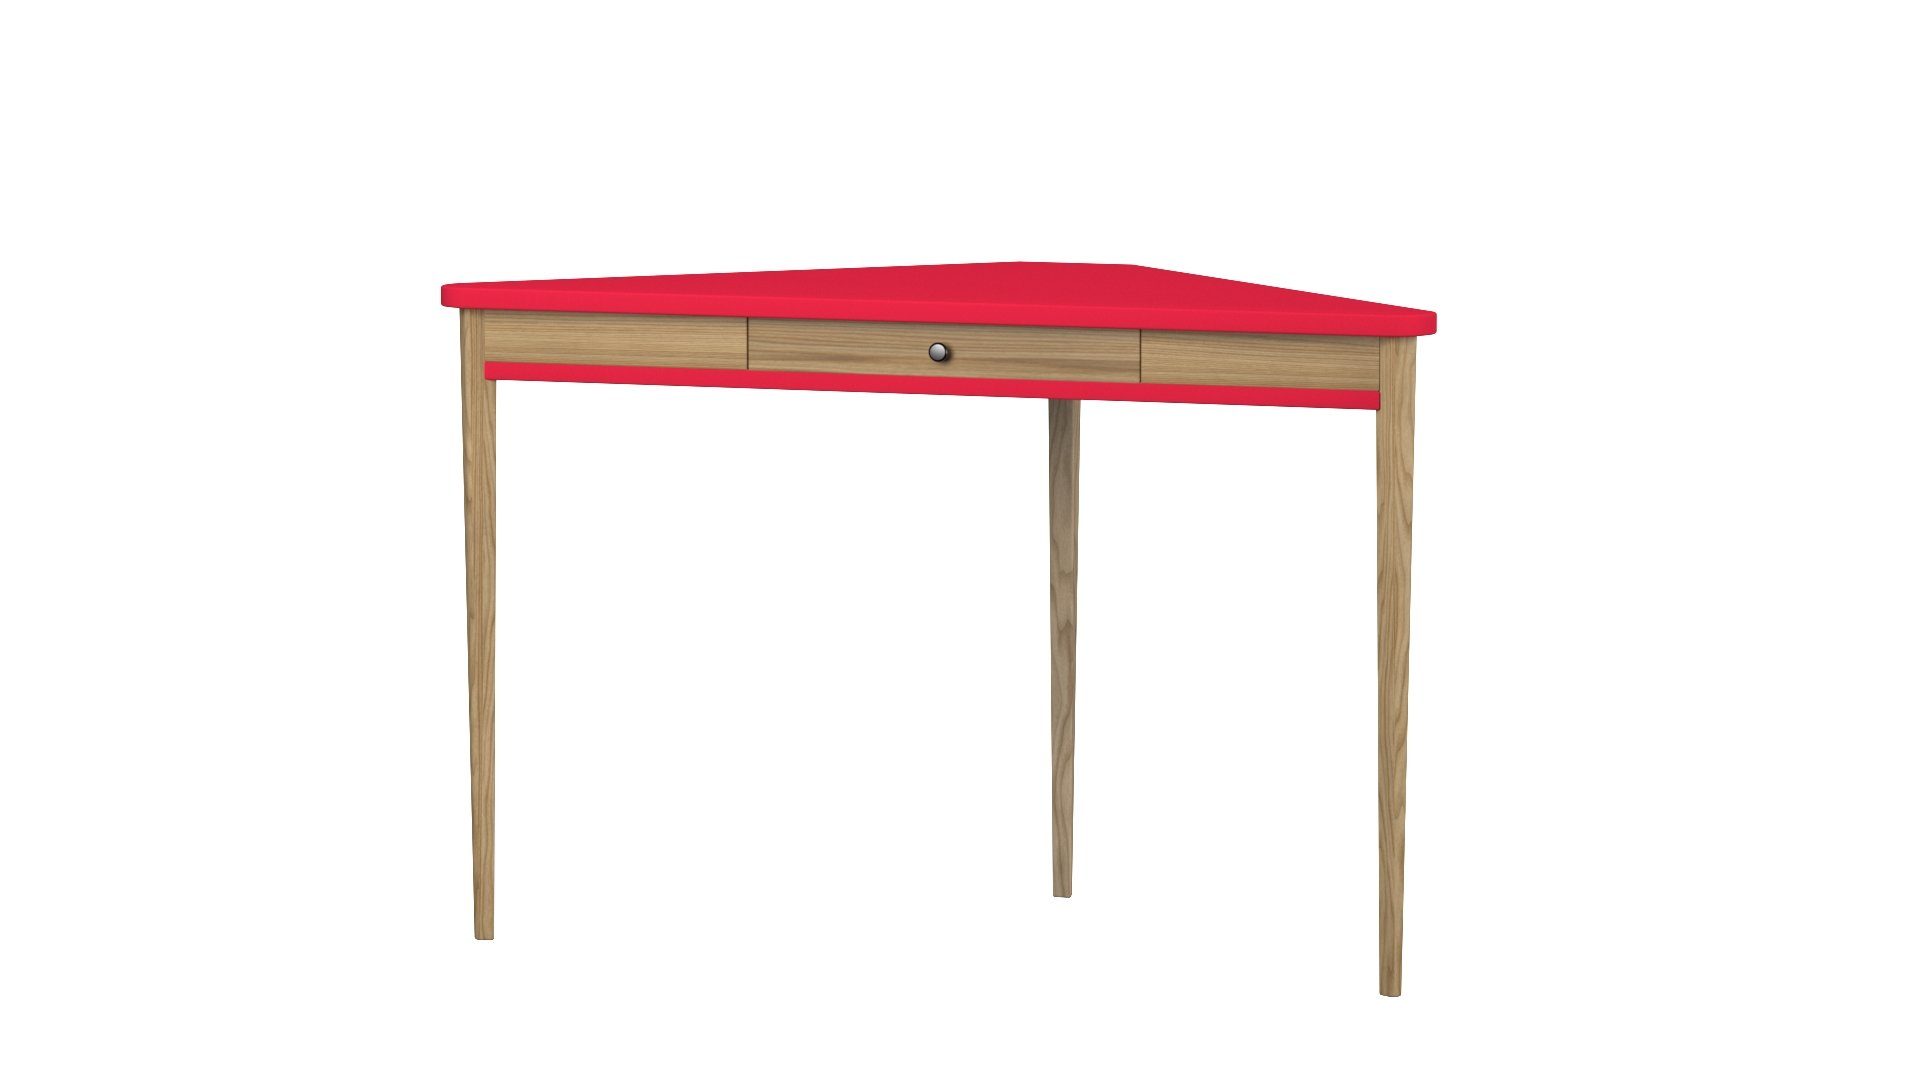 Siblo Schreibtisch Eckschreibtisch Sally mit Schublade - Moderner Schreibtisch - minimalistisches Design - Kinderzimmer - Jugendzimmer - MDF-Platte - Eschenholz (Eckschreibtisch Sally mit Schublade) Rot